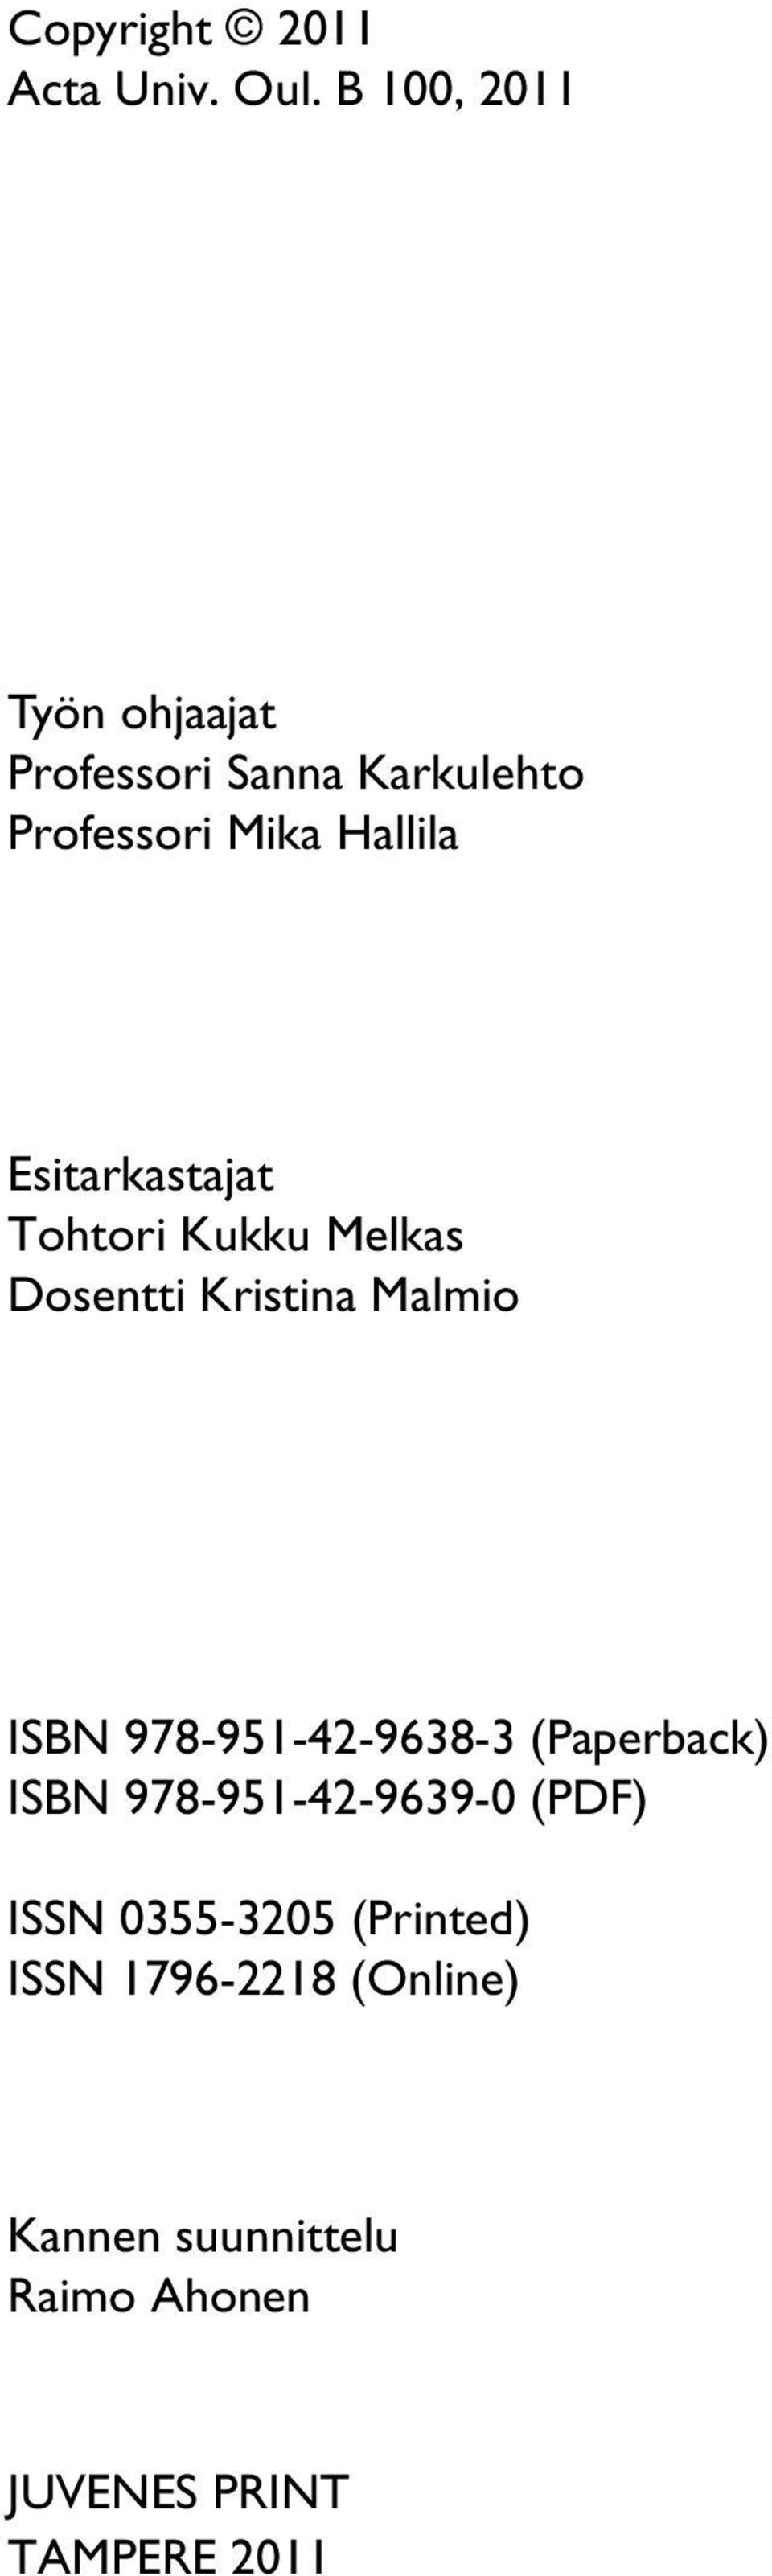 Esitarkastajat Tohtori Kukku Melkas Dosentti Kristina Malmio ISBN 978-951-42-9638-3